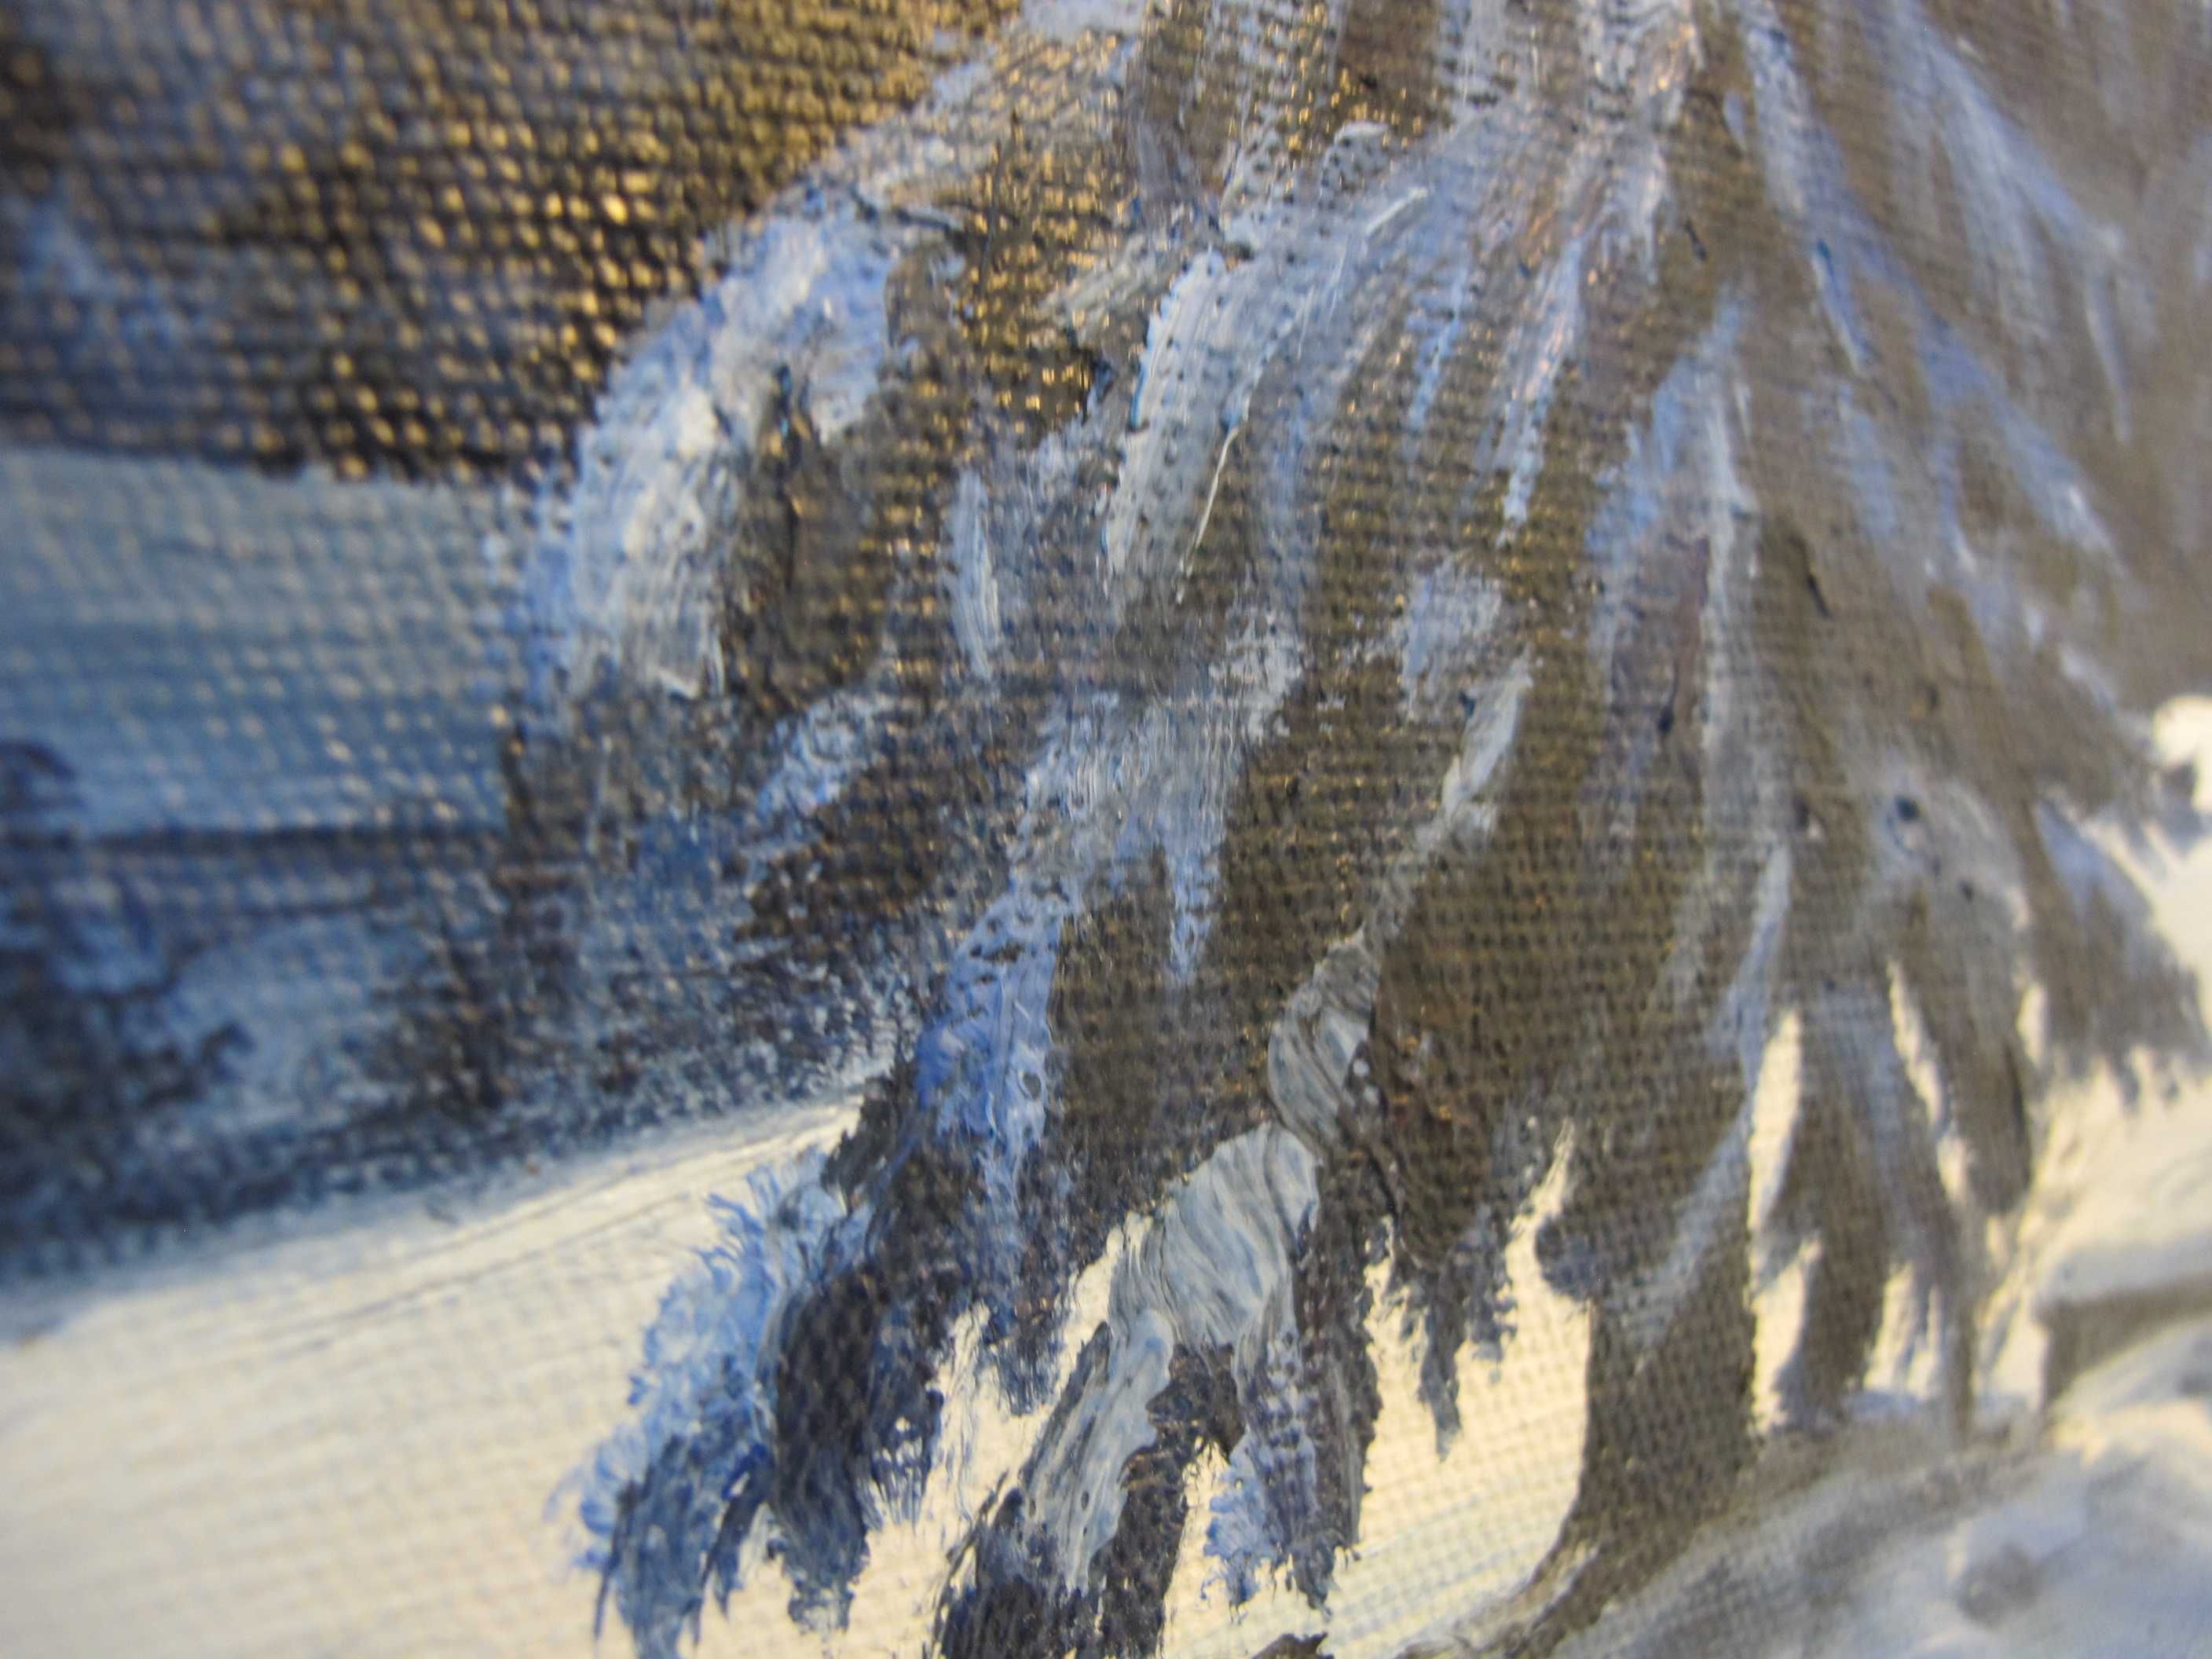 Obraz olejny na płótnie  sygnowany pejzaż zimowy góry chata śnieg